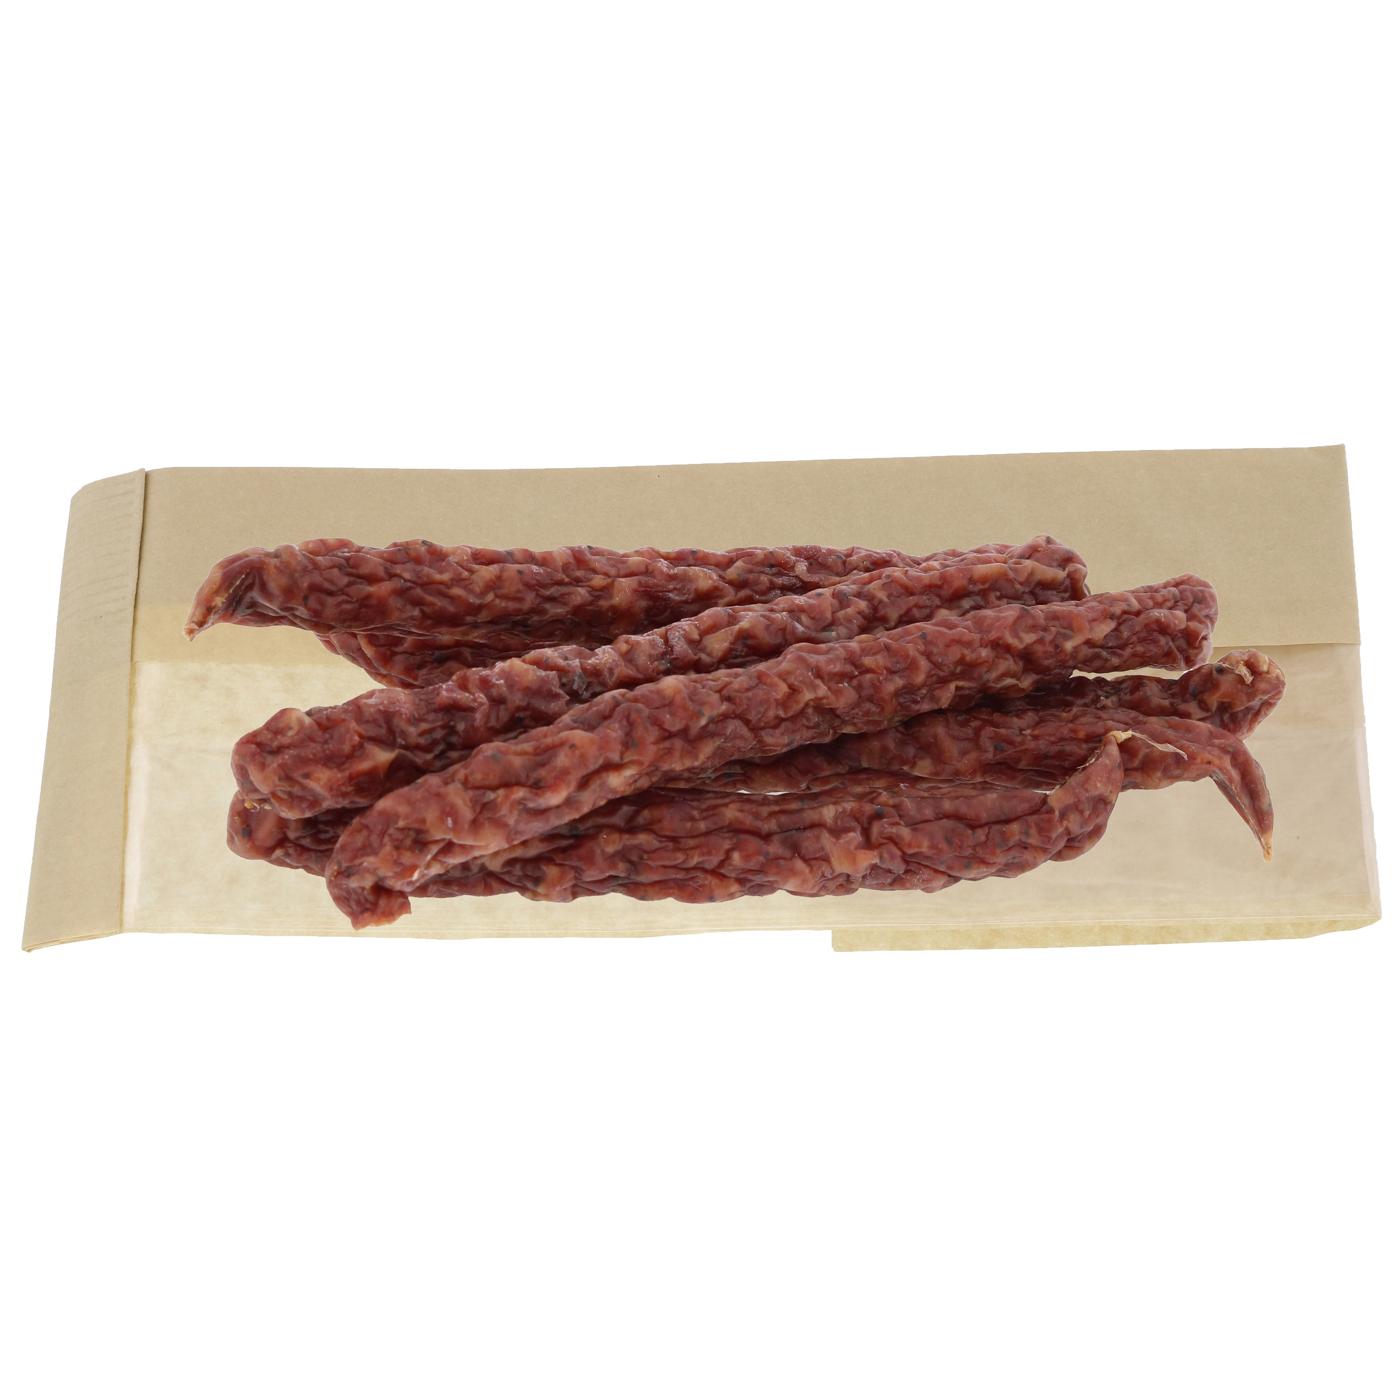 Prasek's Pork & Beef Sausage Sticks; image 2 of 2